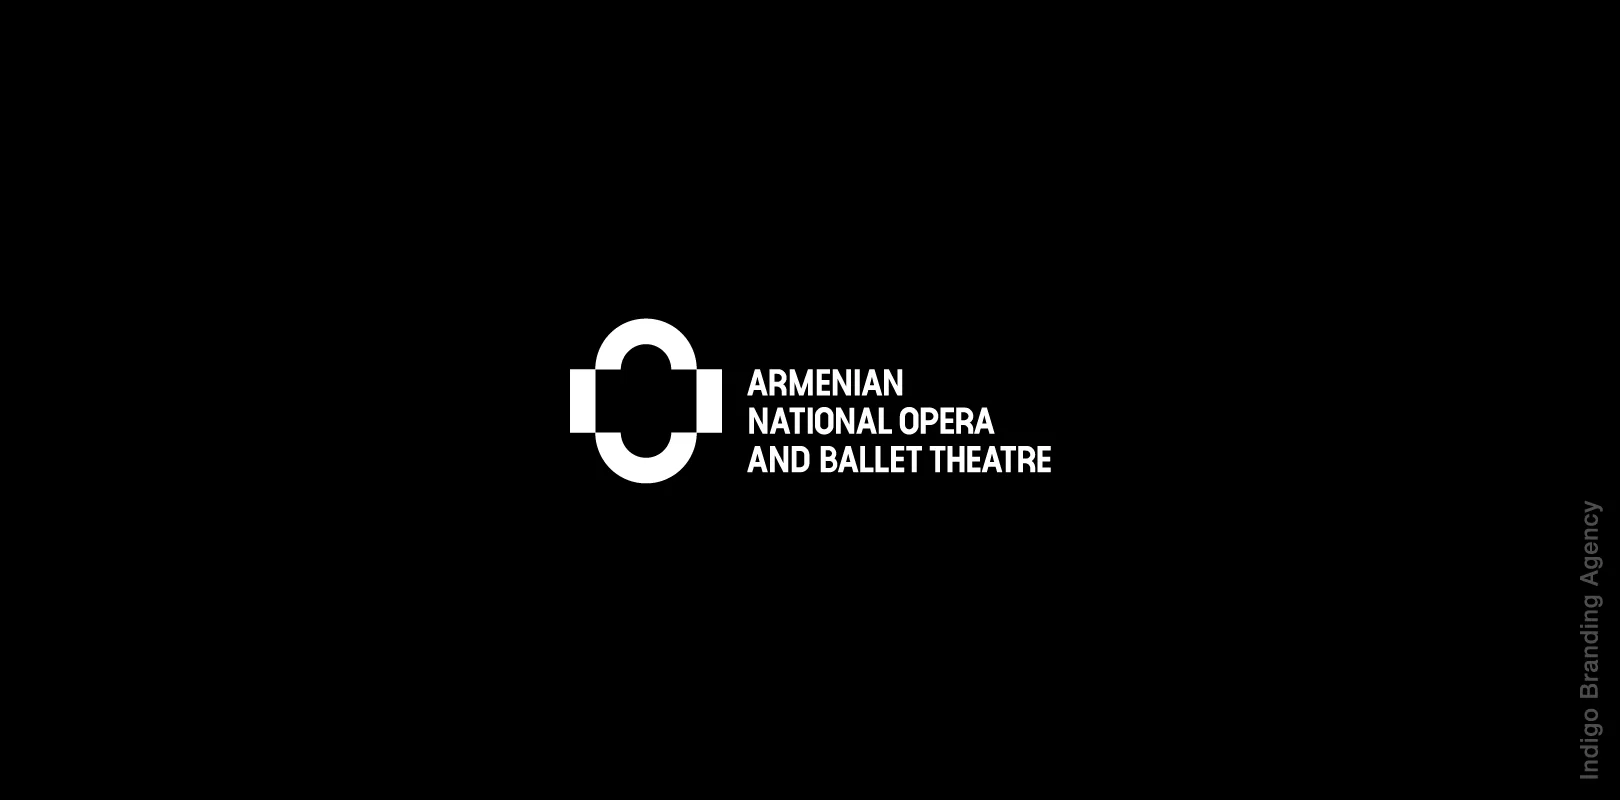 Фирменный стиль, Ребрендинг, Логотип, Визуальный стиль, Визуальный образ, Indigo Branding Agency, Armenian National Opera and Ballet Theatre